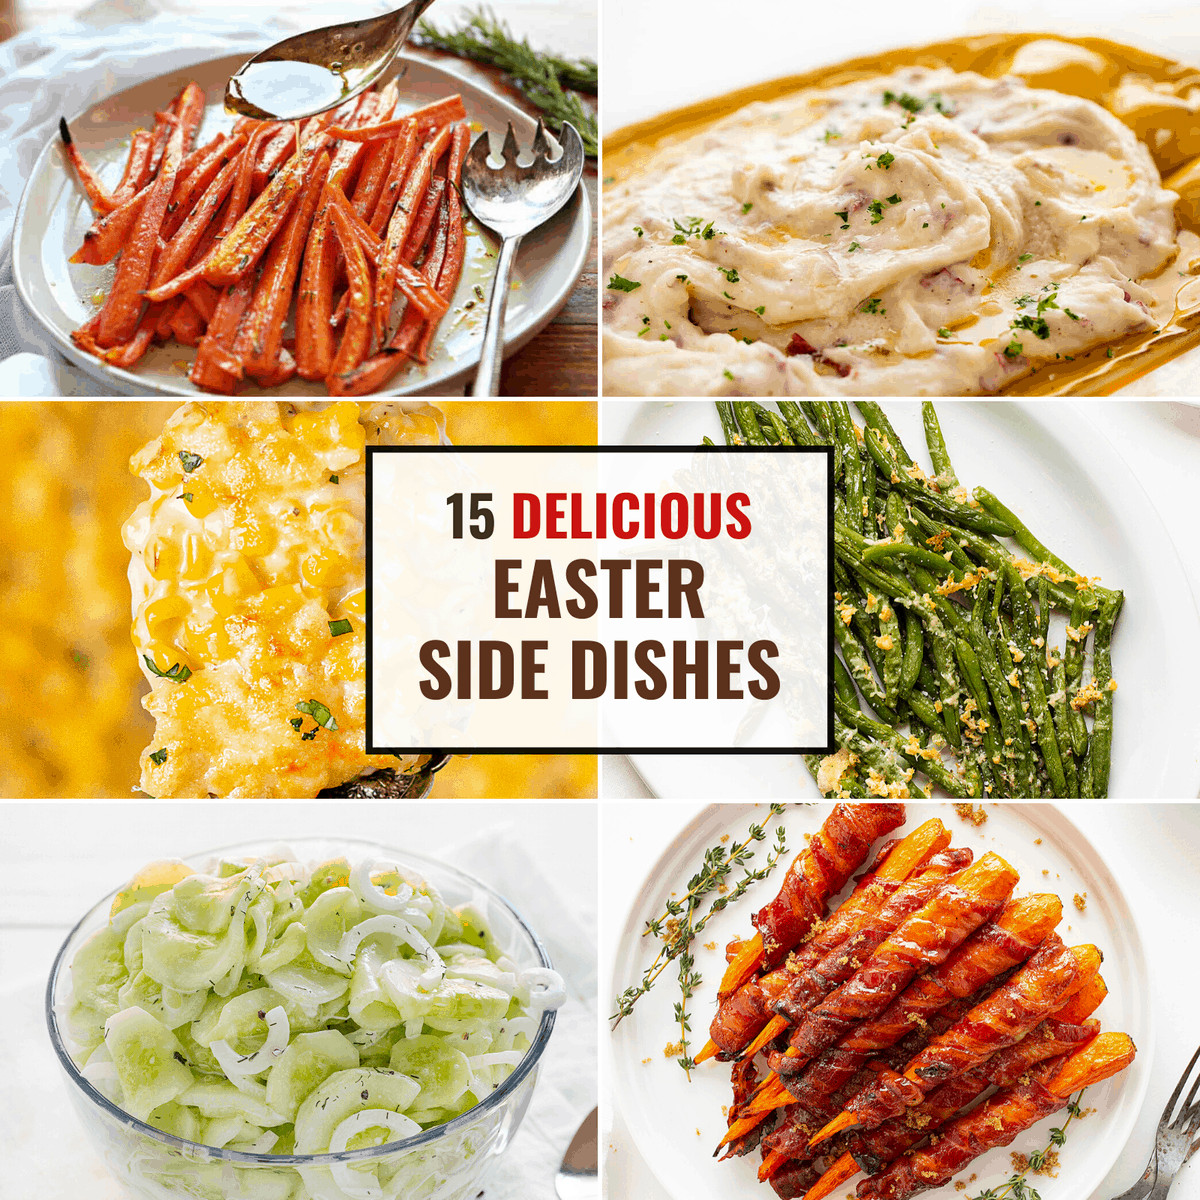 Easy Side Dishes For Easter
 Easter Brunch Sides 60 Easy Easter Side Dishes